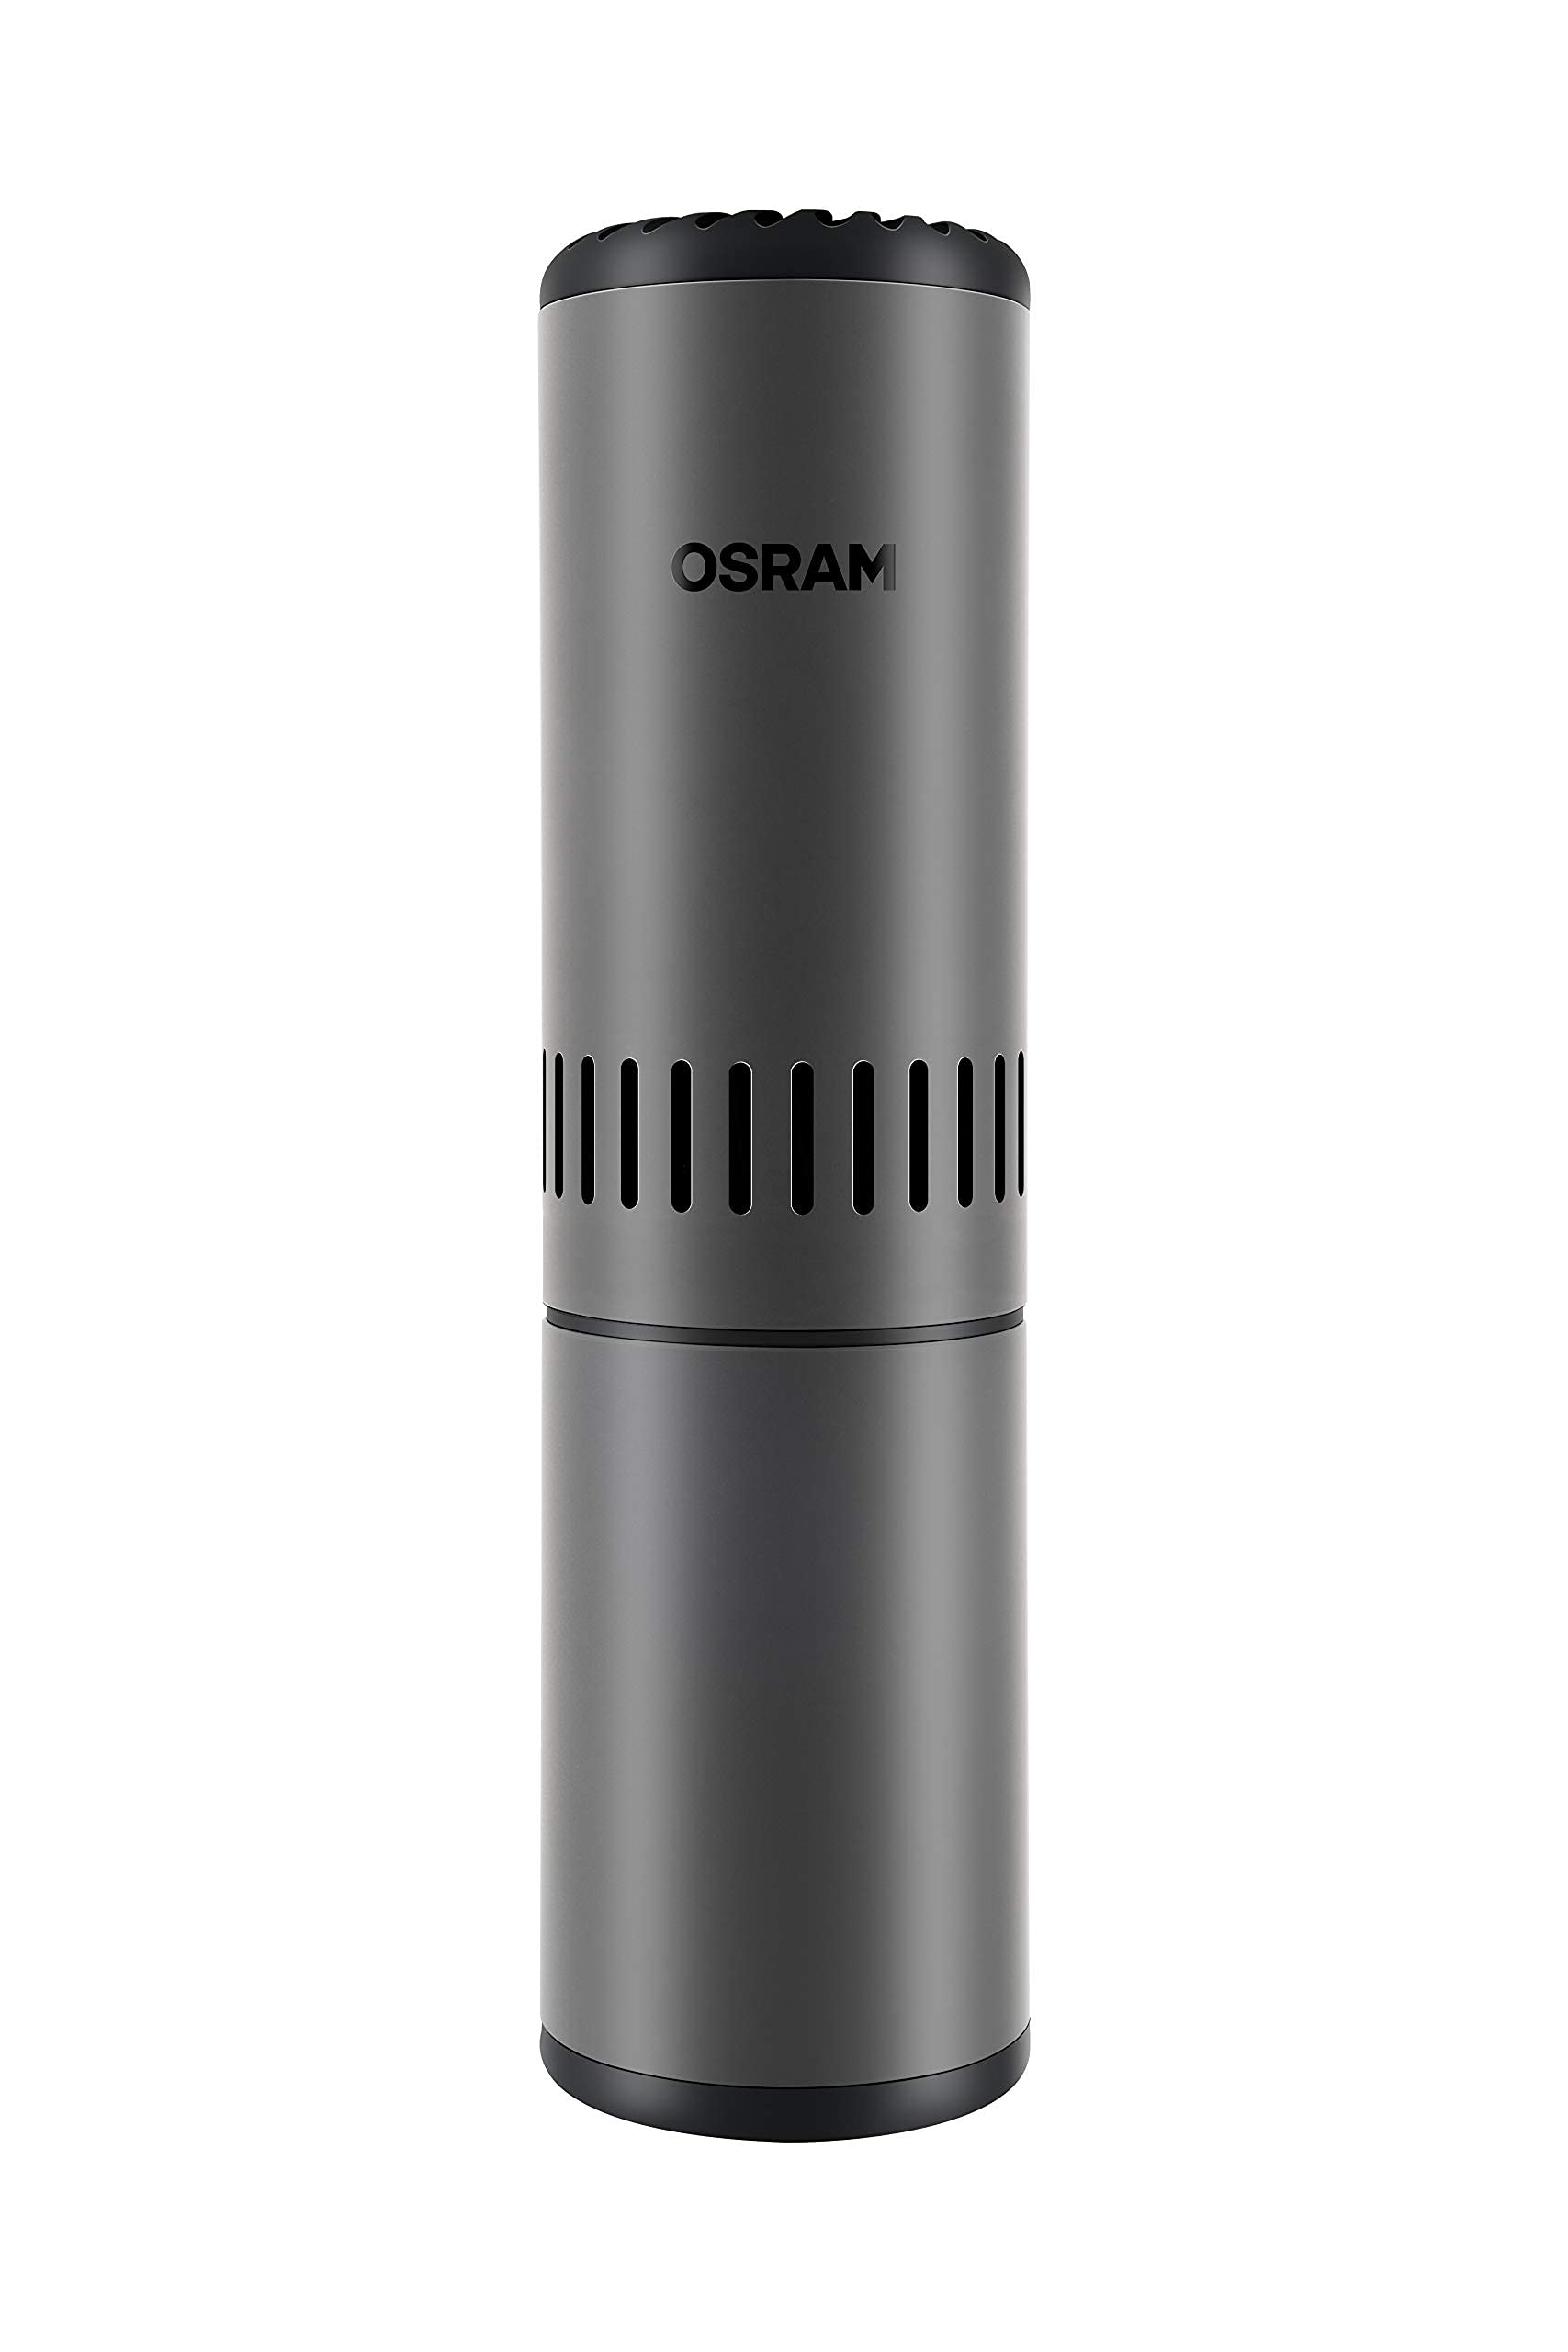 OSRAM AirZing UV-Compact Pro, tragbarer Luftreiniger mit HEPA Filter zum Einsatz im Auto und kleineren Räumen, keimtötendes UV-C-Gerät, neutralisiert 99,9% der Viren, Bakterien und Mikroorganismen von Osram